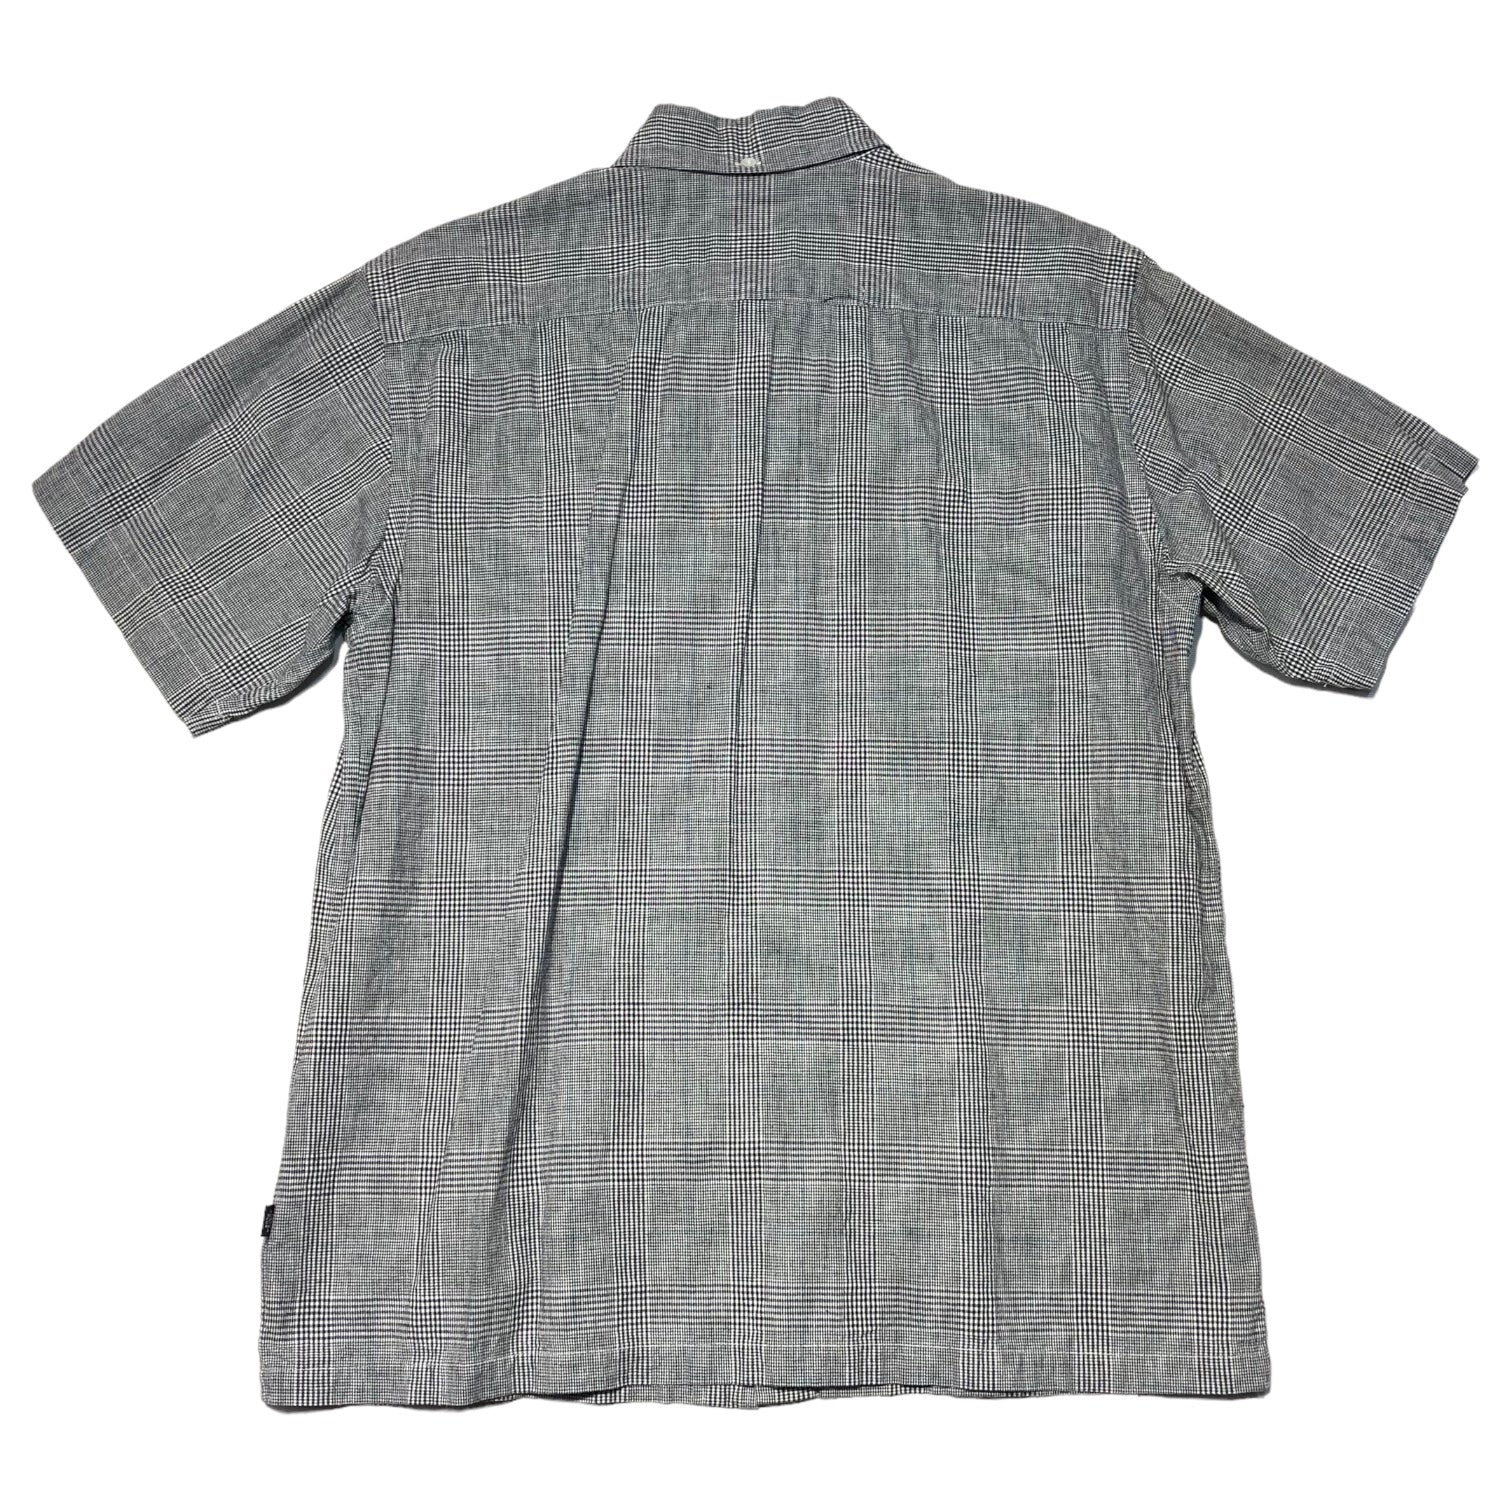 HEAD PORTER PLUS(ヘッドポータープラス) short sleeve checked shirt 半袖 チェックシャツ M グレー